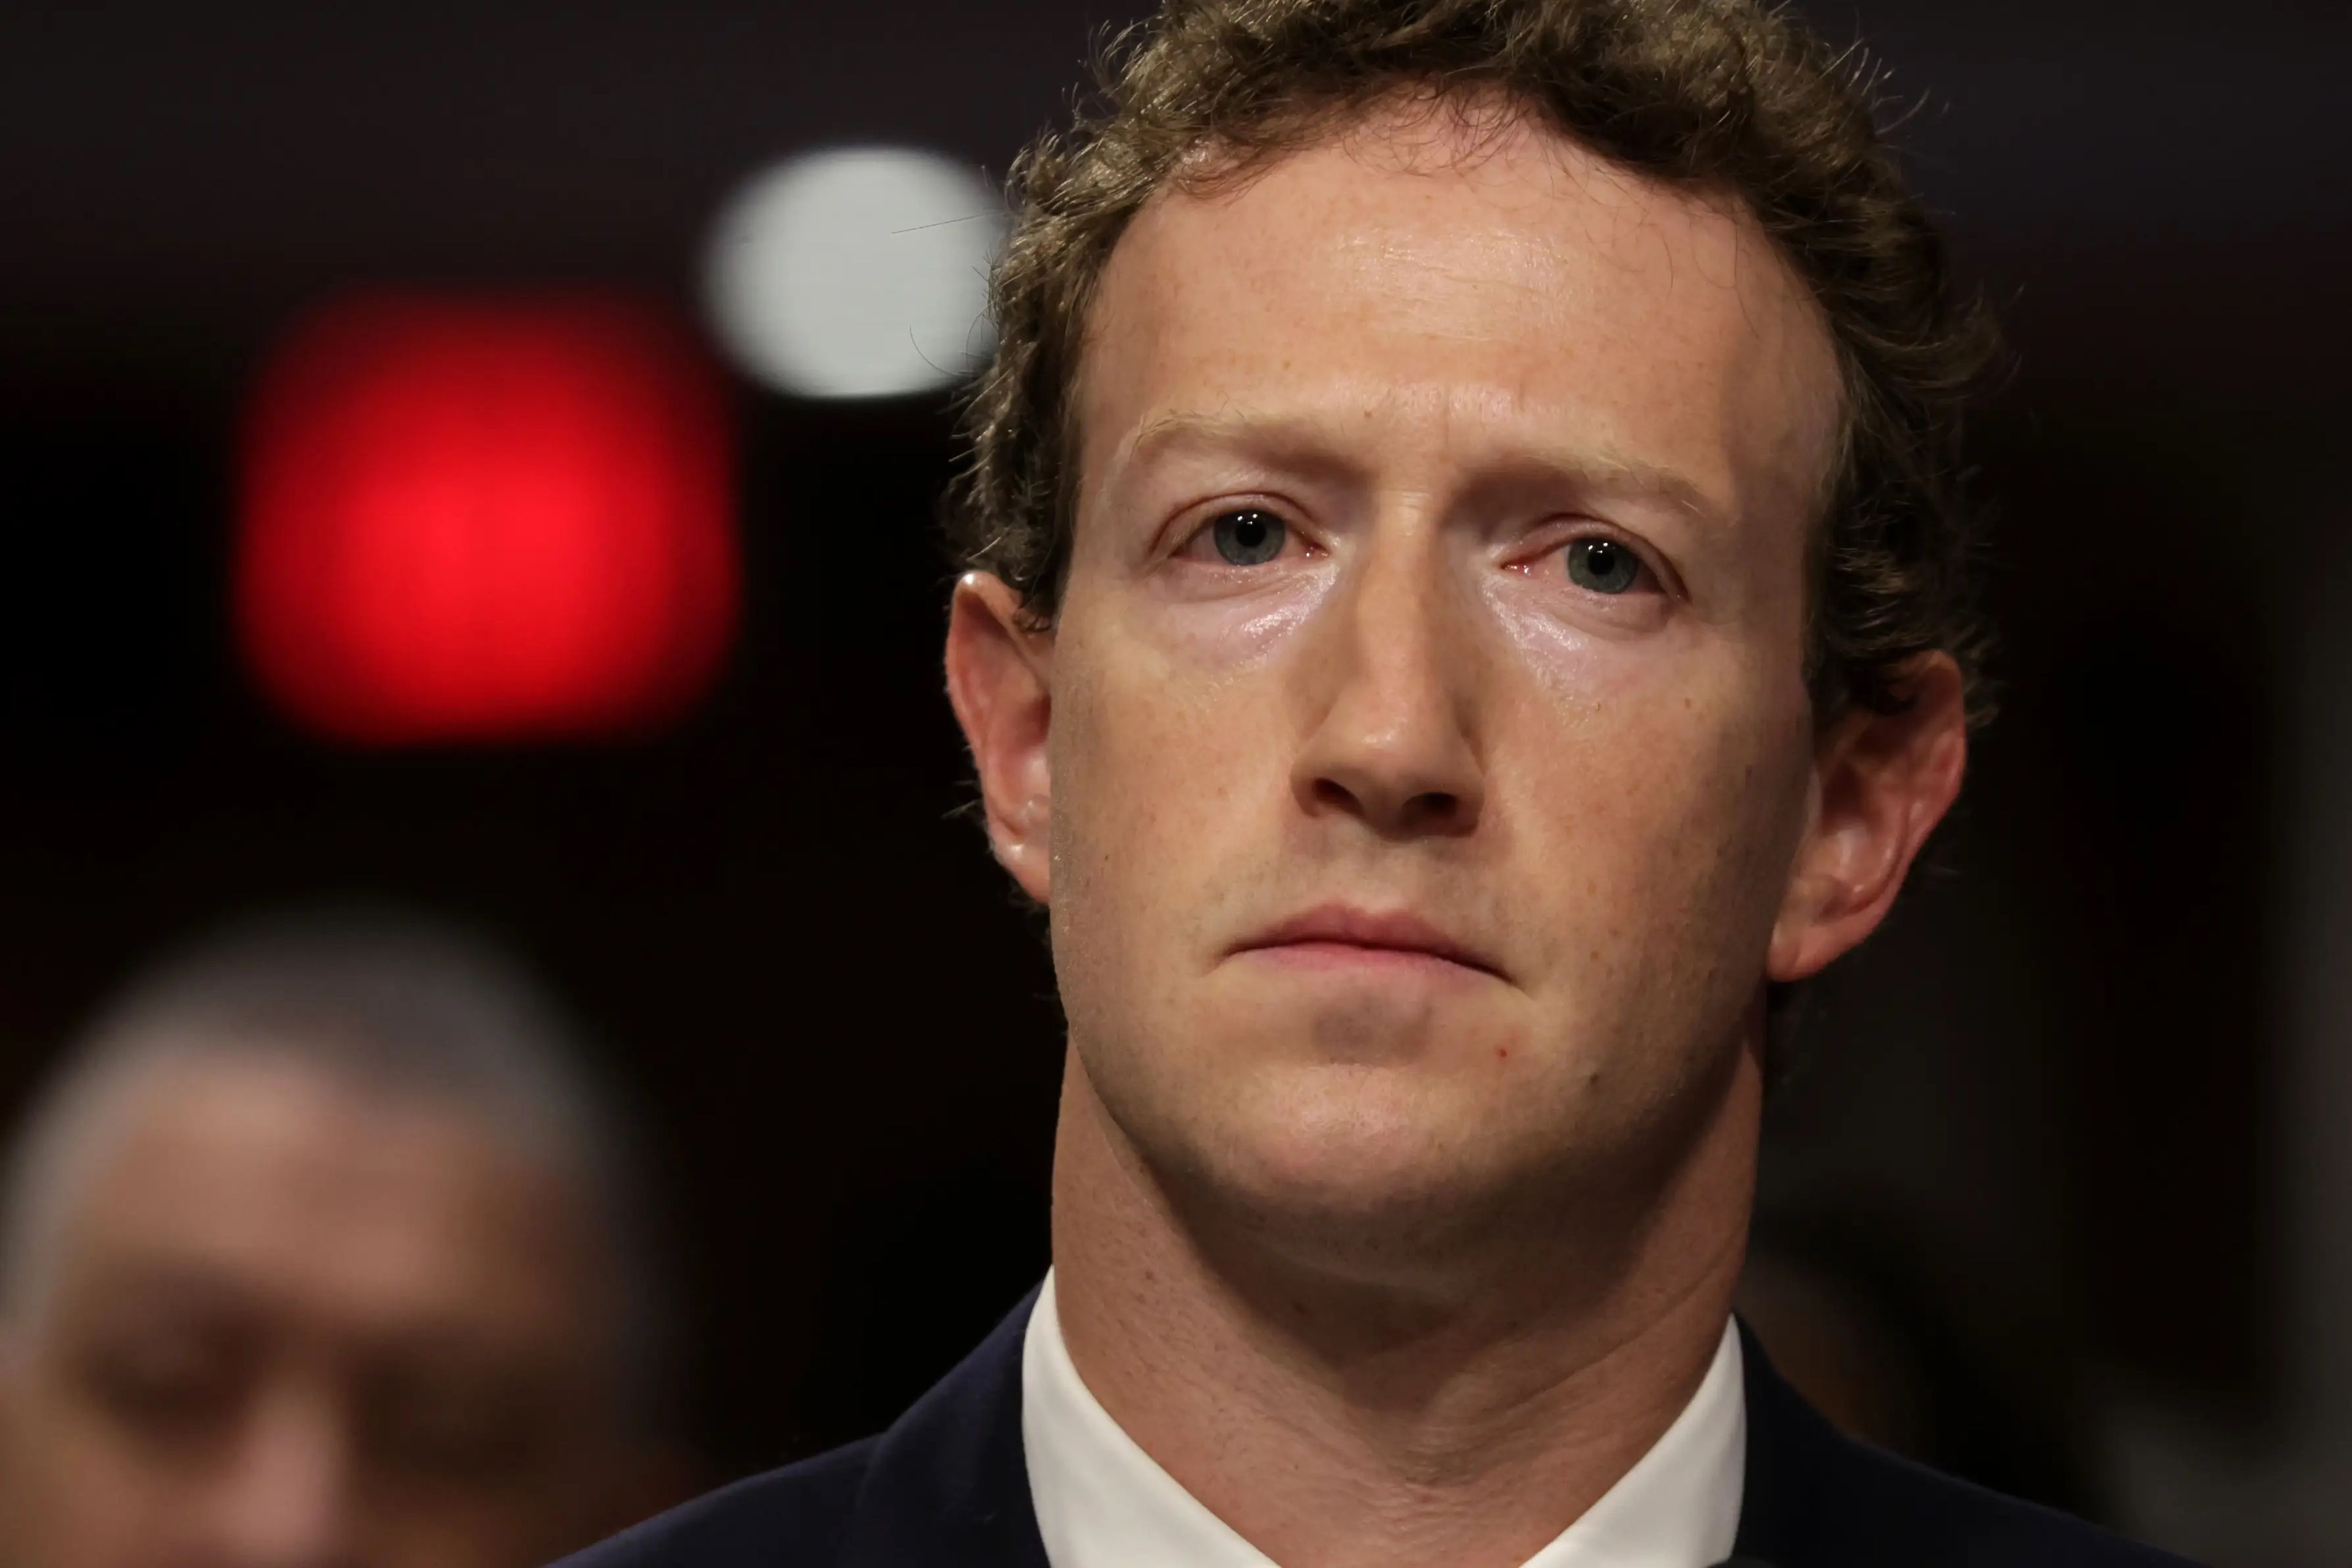 El CEO de la matriz de Facebook, Mark Zuckerberg, cuenta con un patrimonio neto de 181.000 millones de dólares, según el Índice de Multimillonarios de Bloomberg.